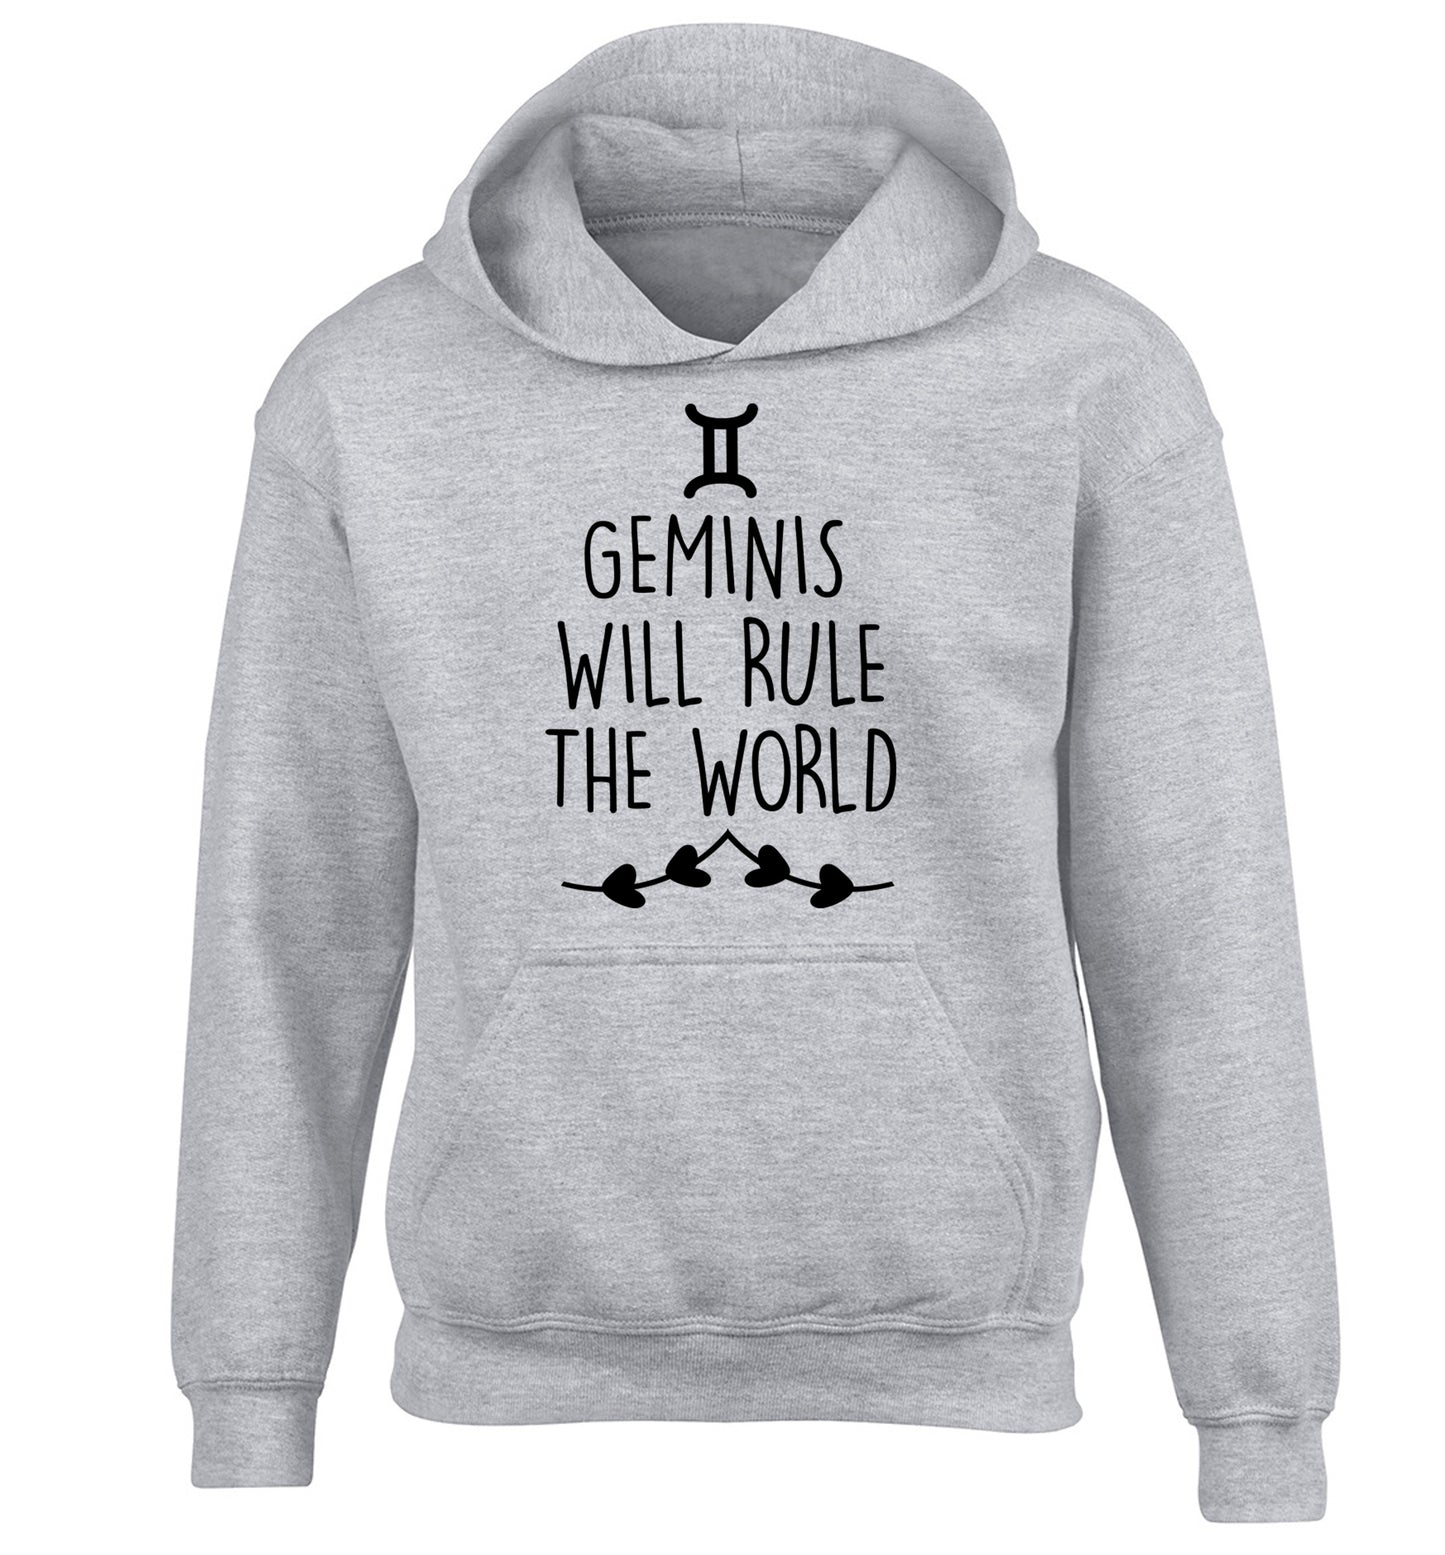 Geminis will rule the world children's grey hoodie 12-13 Years